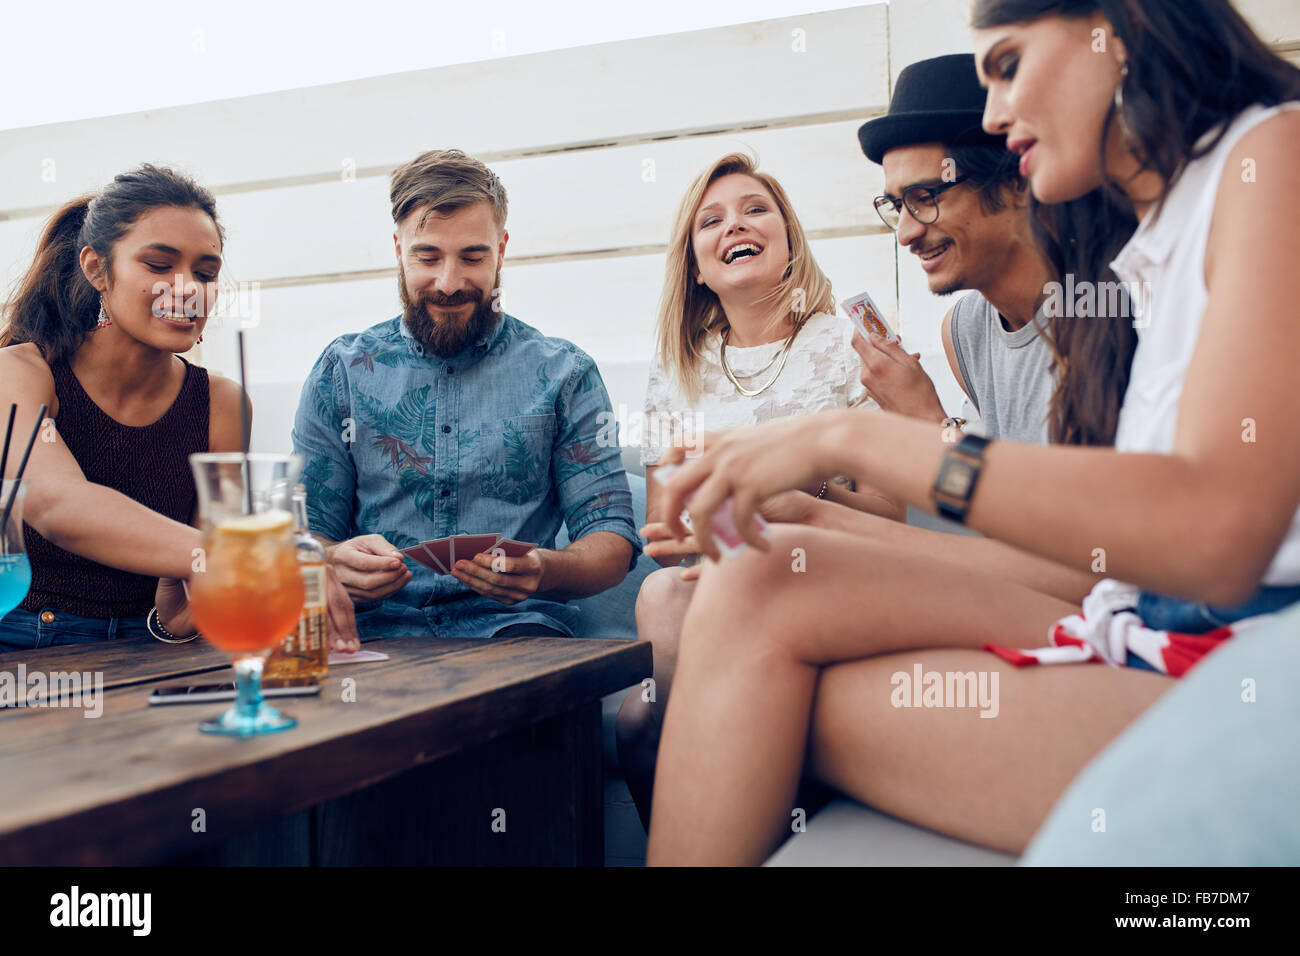 Gruppe von Freunden sitzen an einem Holztisch und Spielkarten. Fröhliche junge Menschen feiern zusammen und spielen Karten. Stockfoto